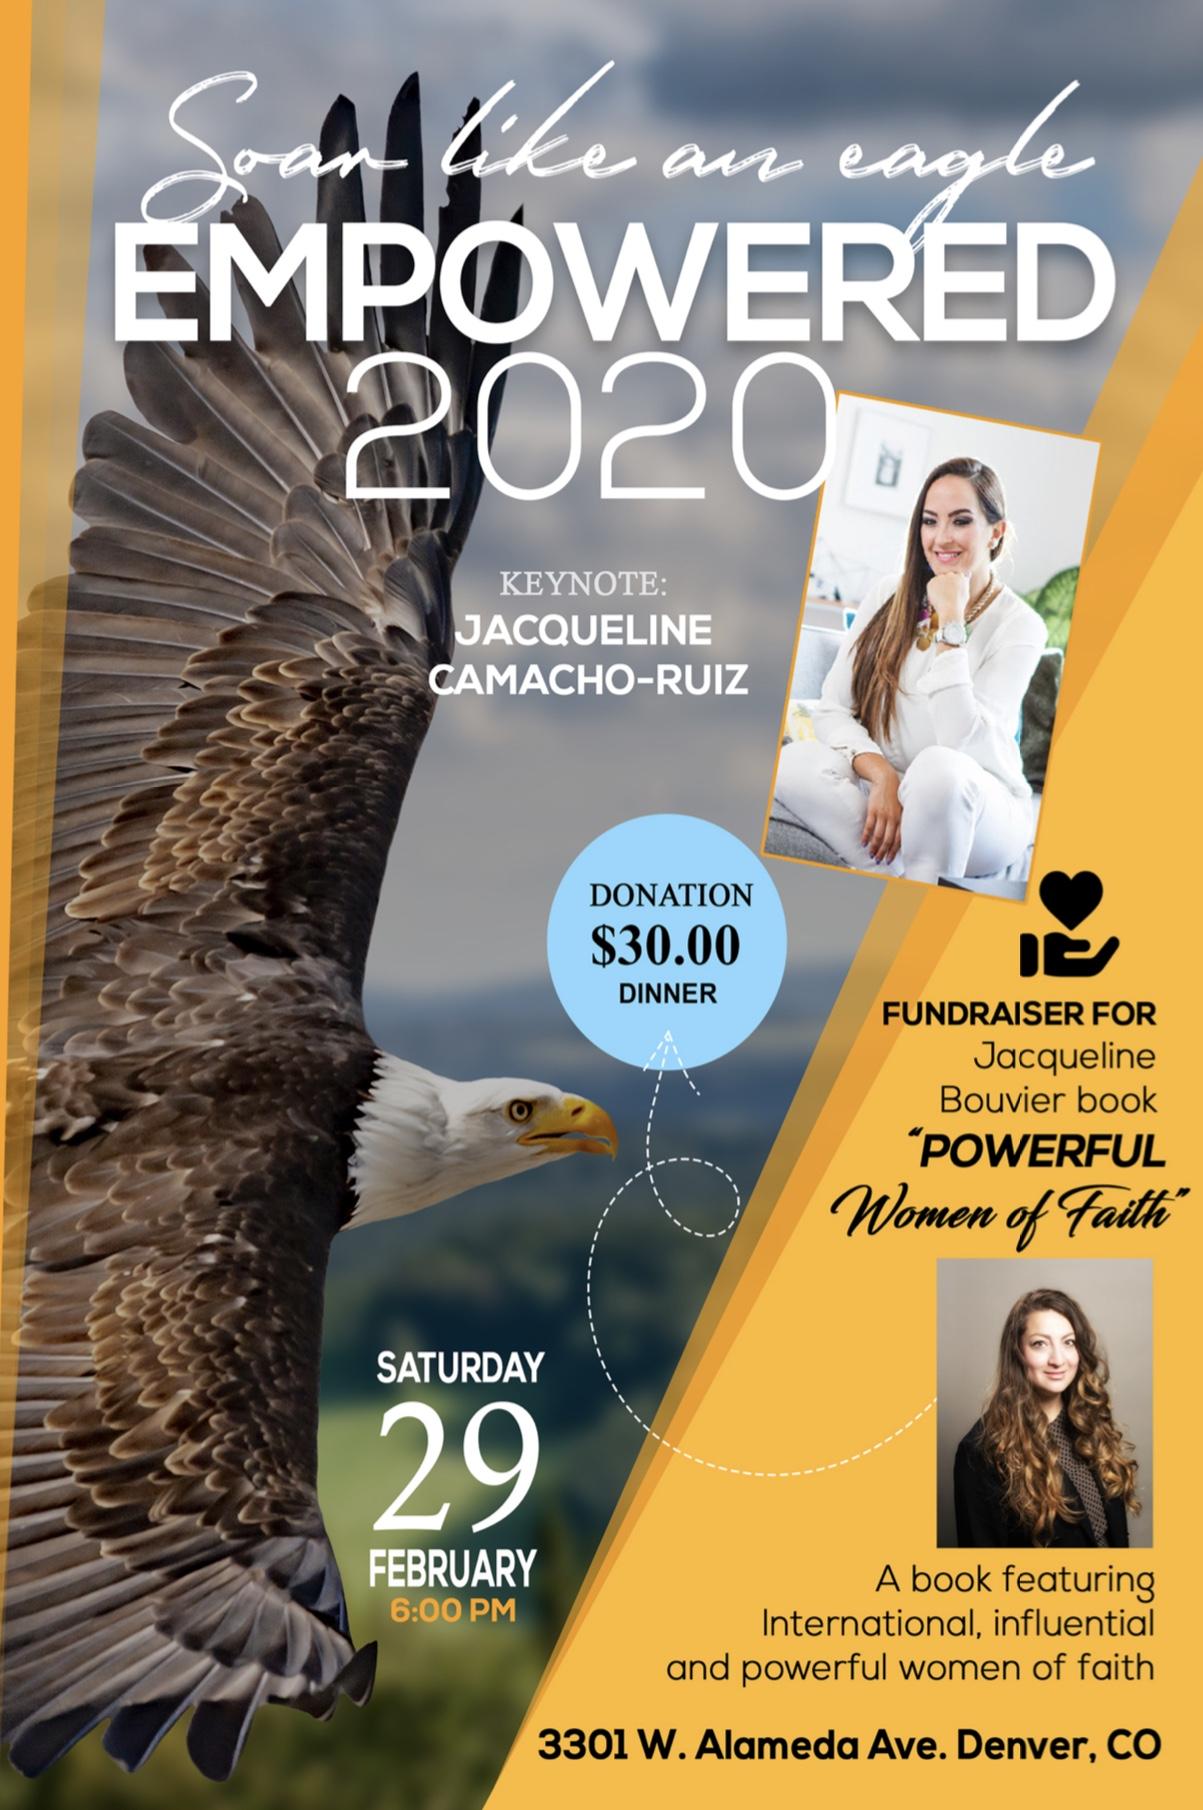 Empowered 2020 | Soar Like An Eagle Empoderamiento 2020 | Vuela Como Aguila